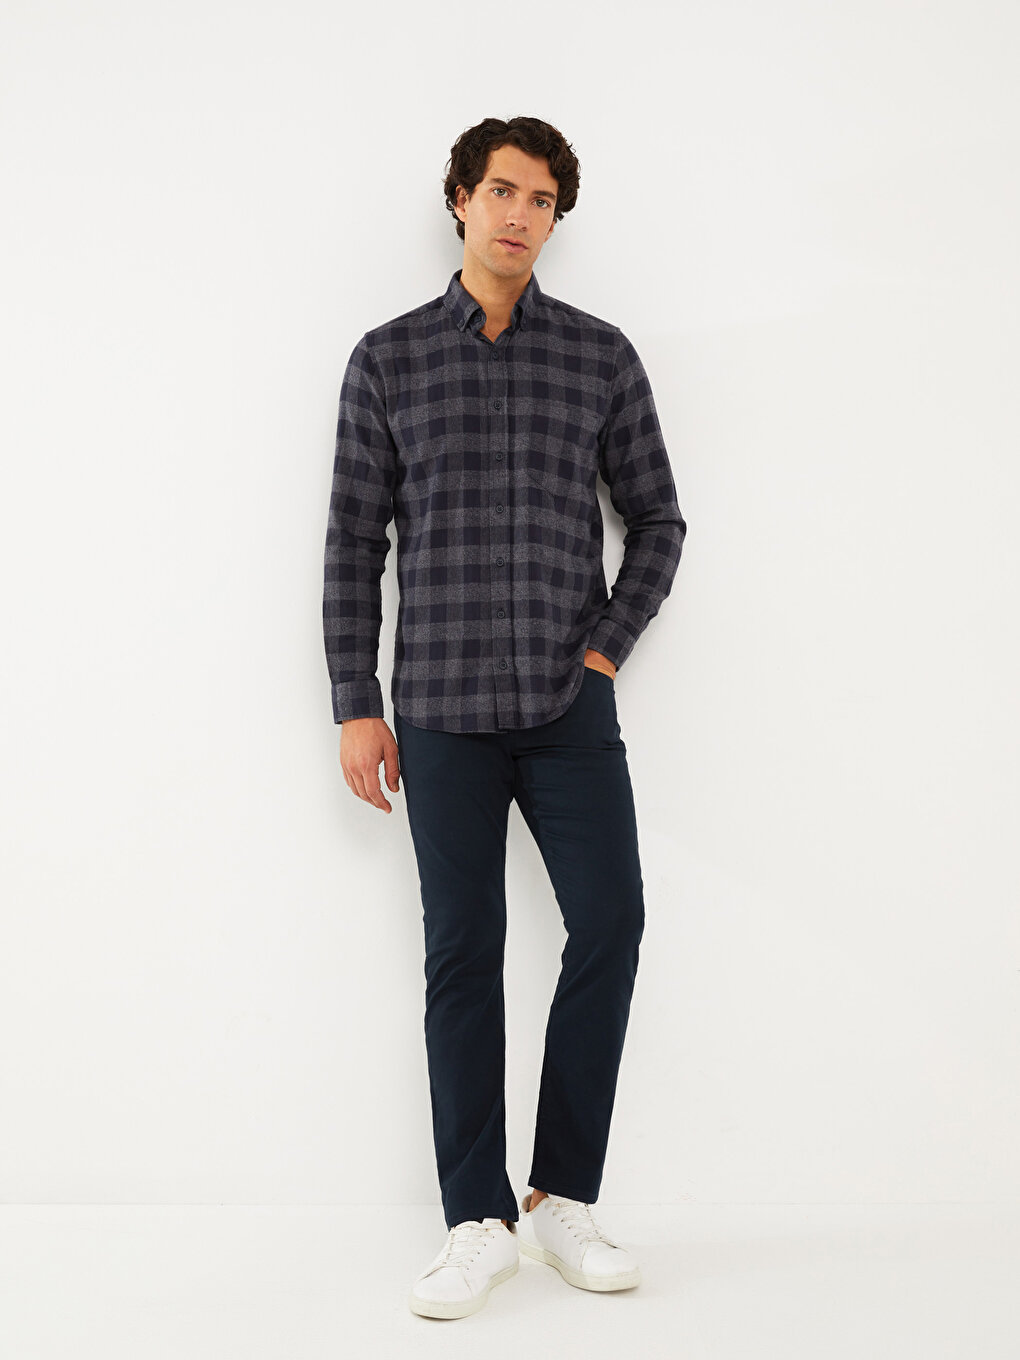 Standard Pattern Gabardine Men's Chino Trousers -W27708Z8-KN7 